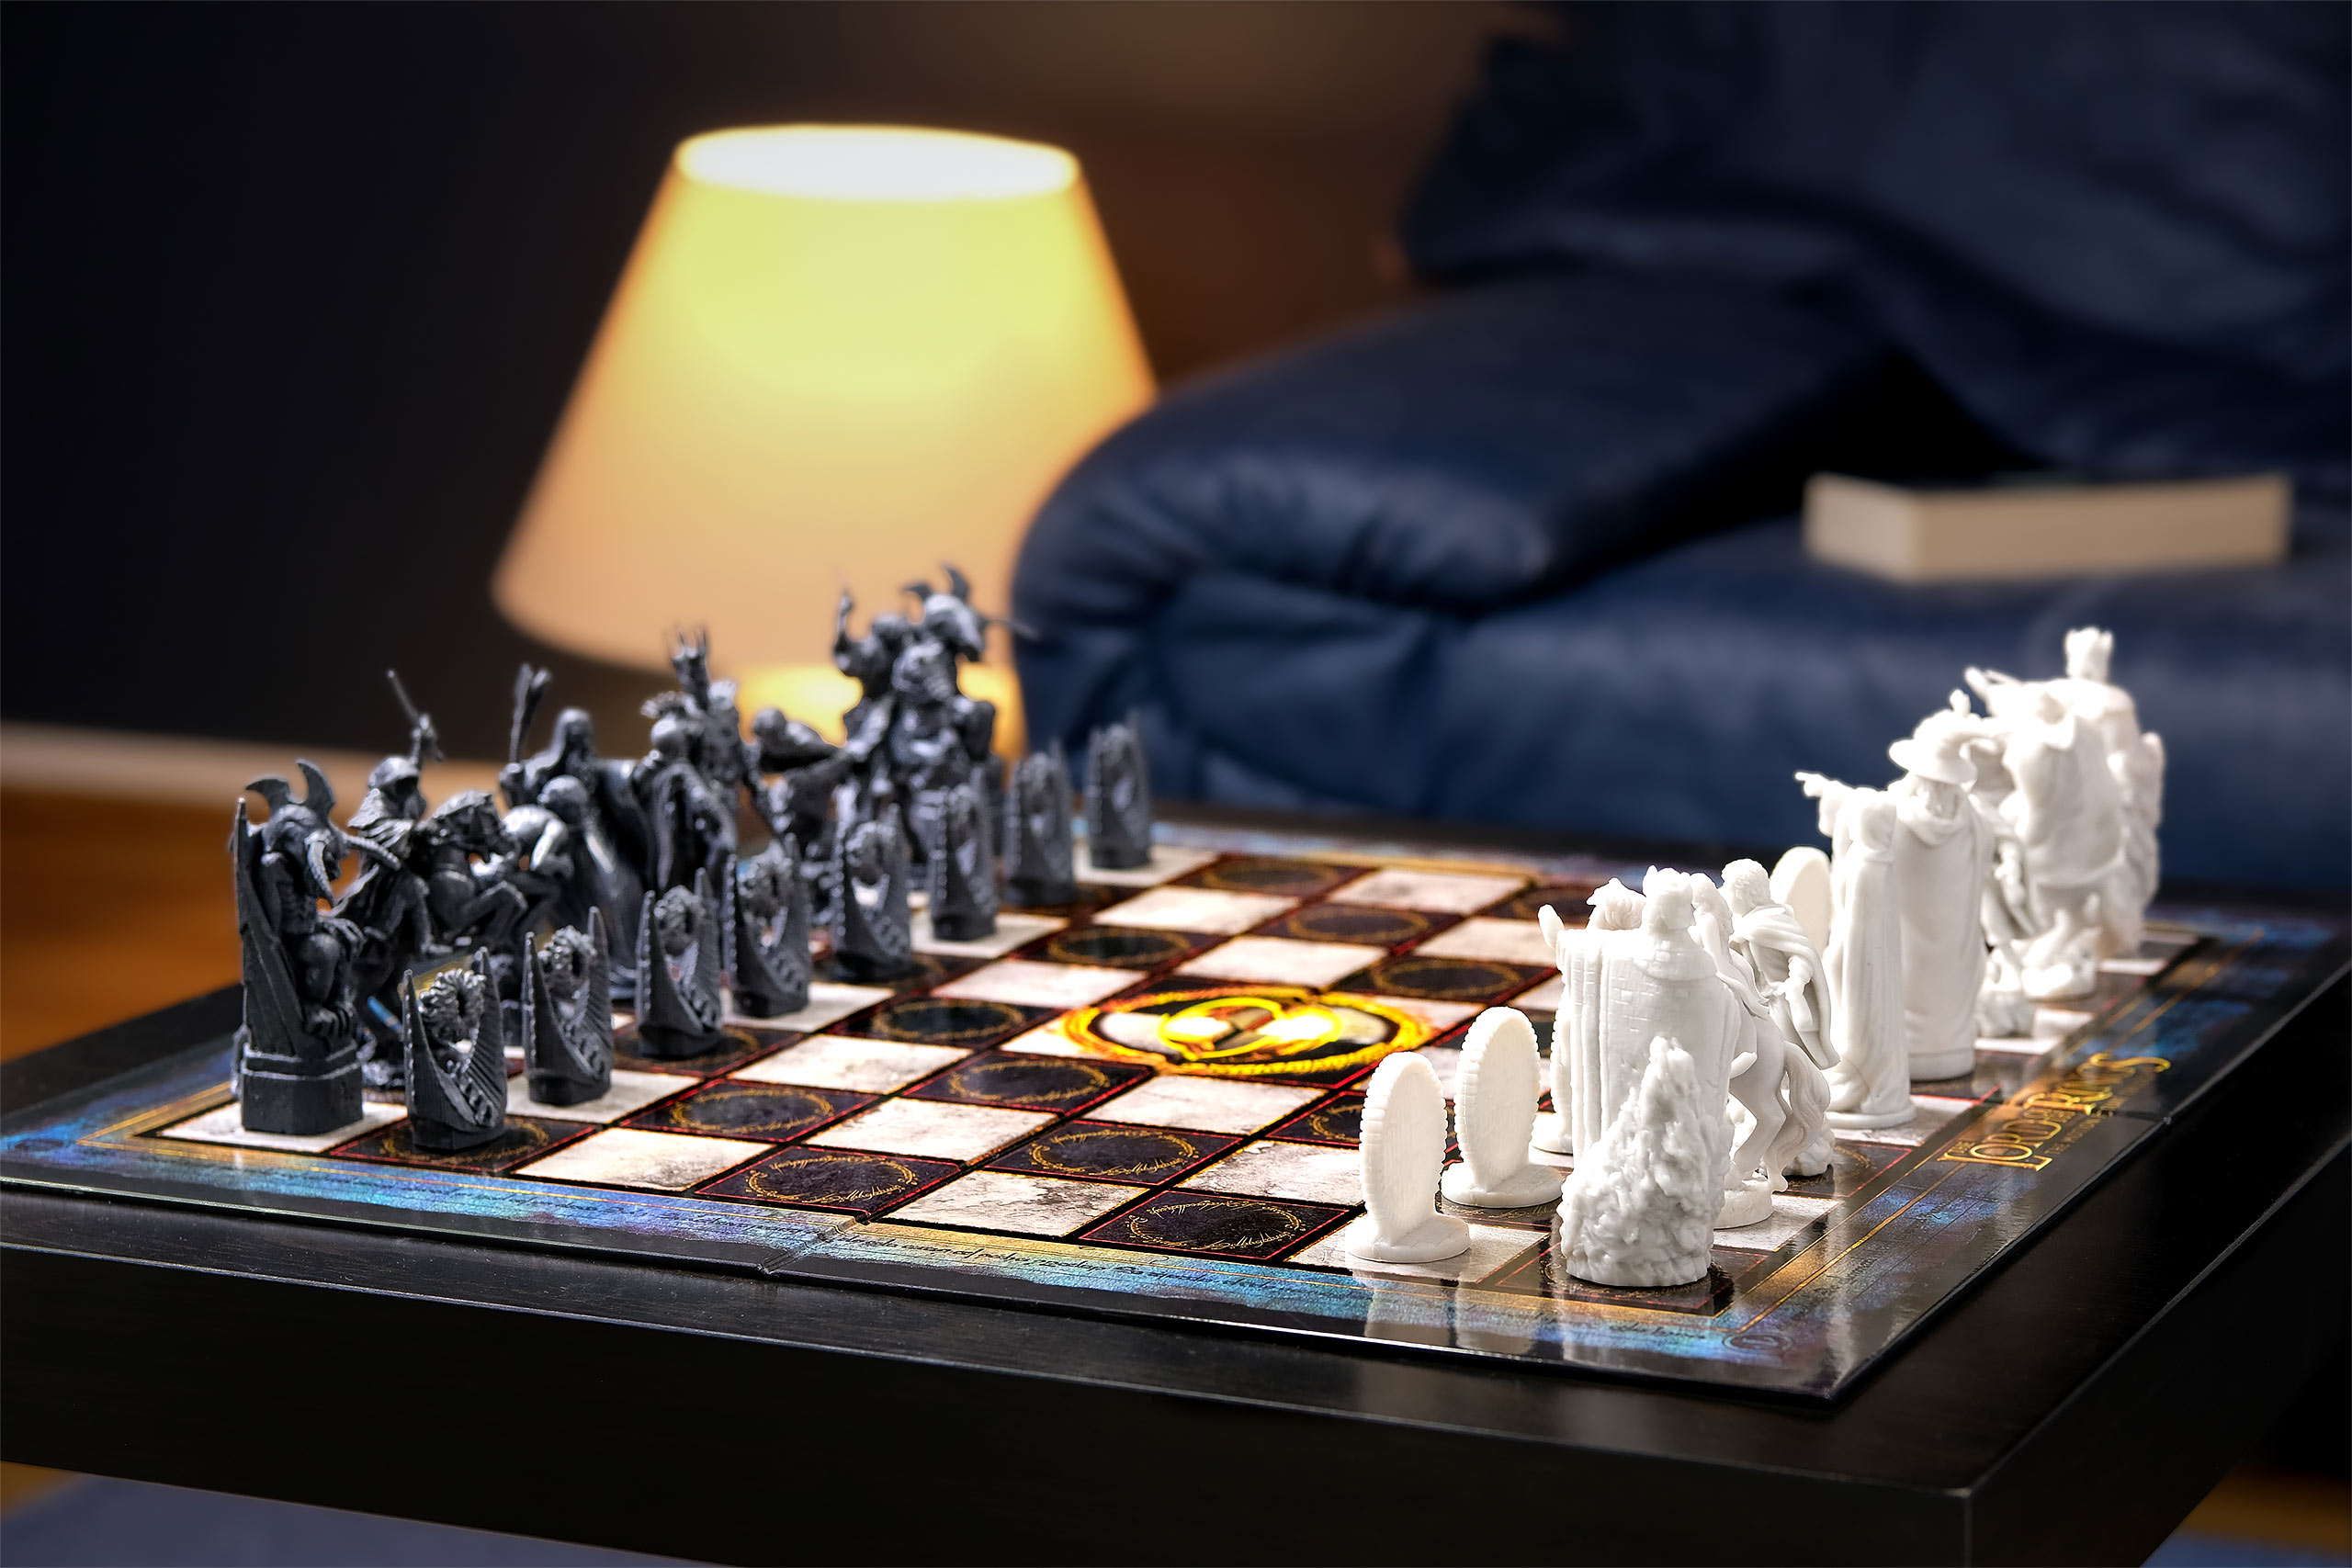 Herr der Ringe - Schlacht um Mittelerde Schachspiel